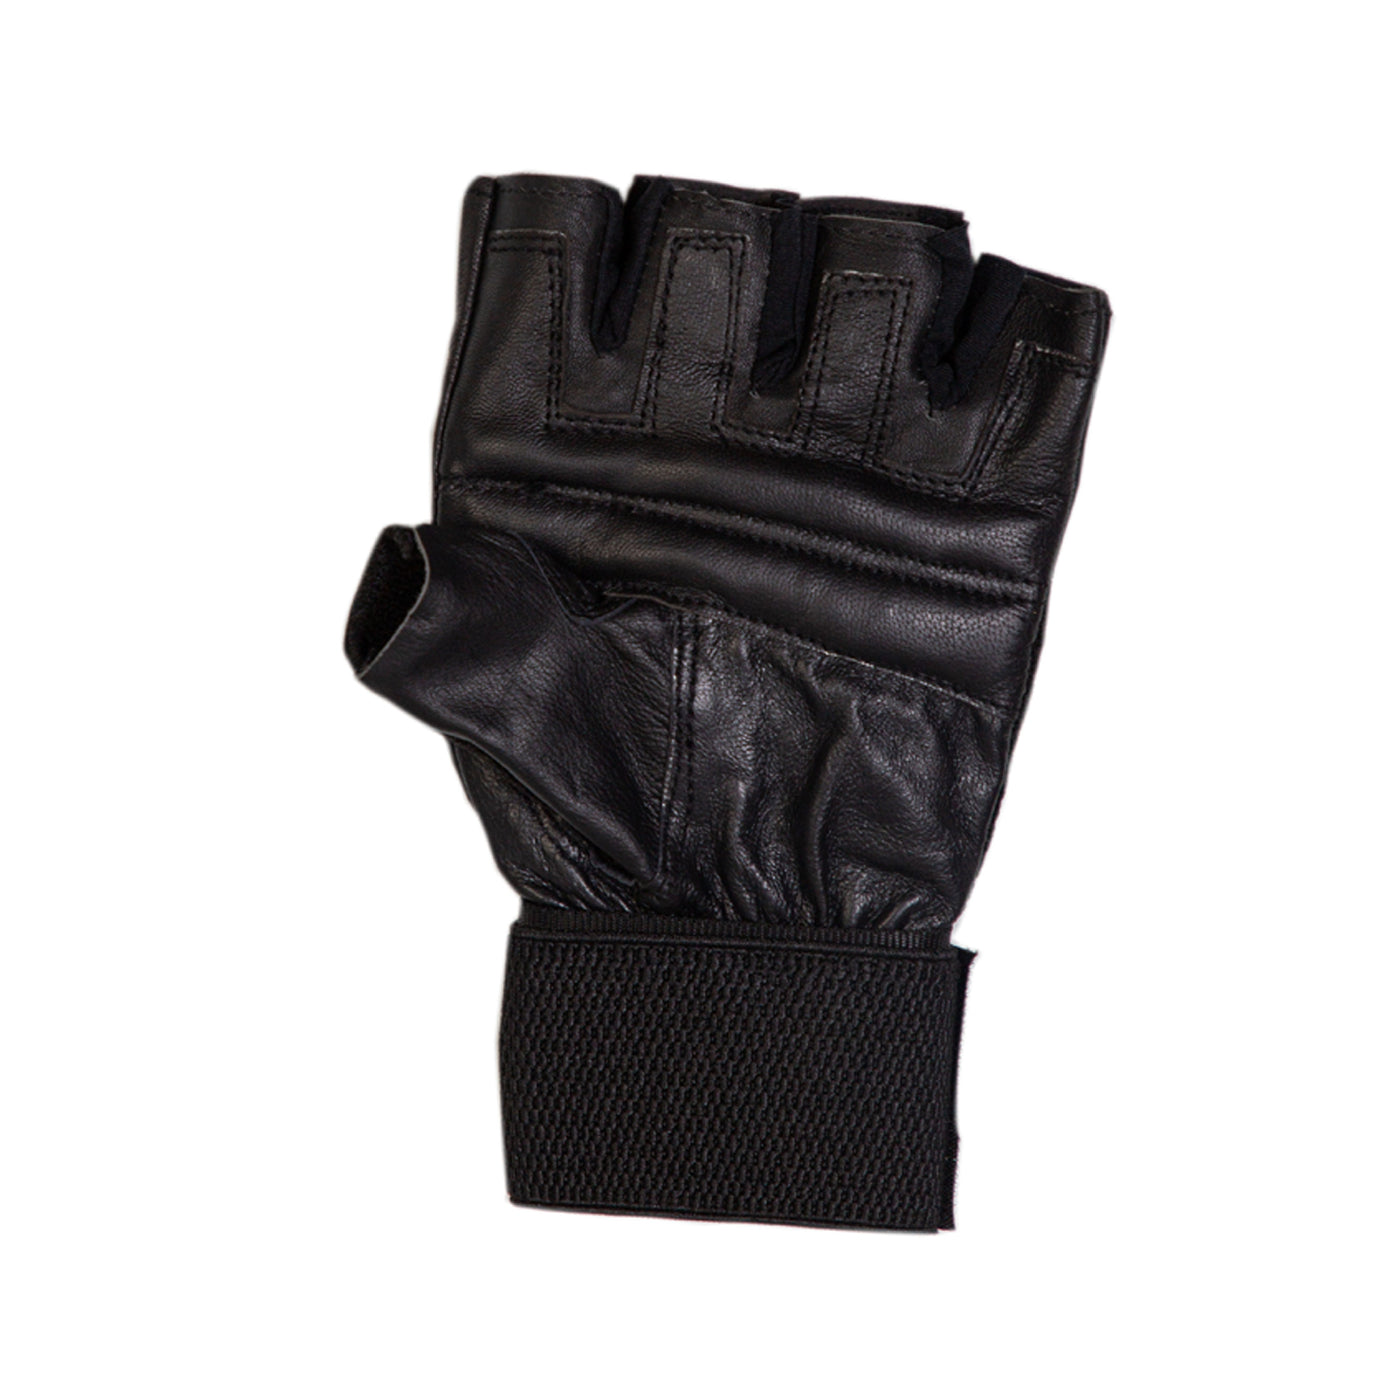 Tenstar Tenstar Deluxe Gym Training Gloves for Men - Black freeshipping - athletive Gym Gloves - Men athletive